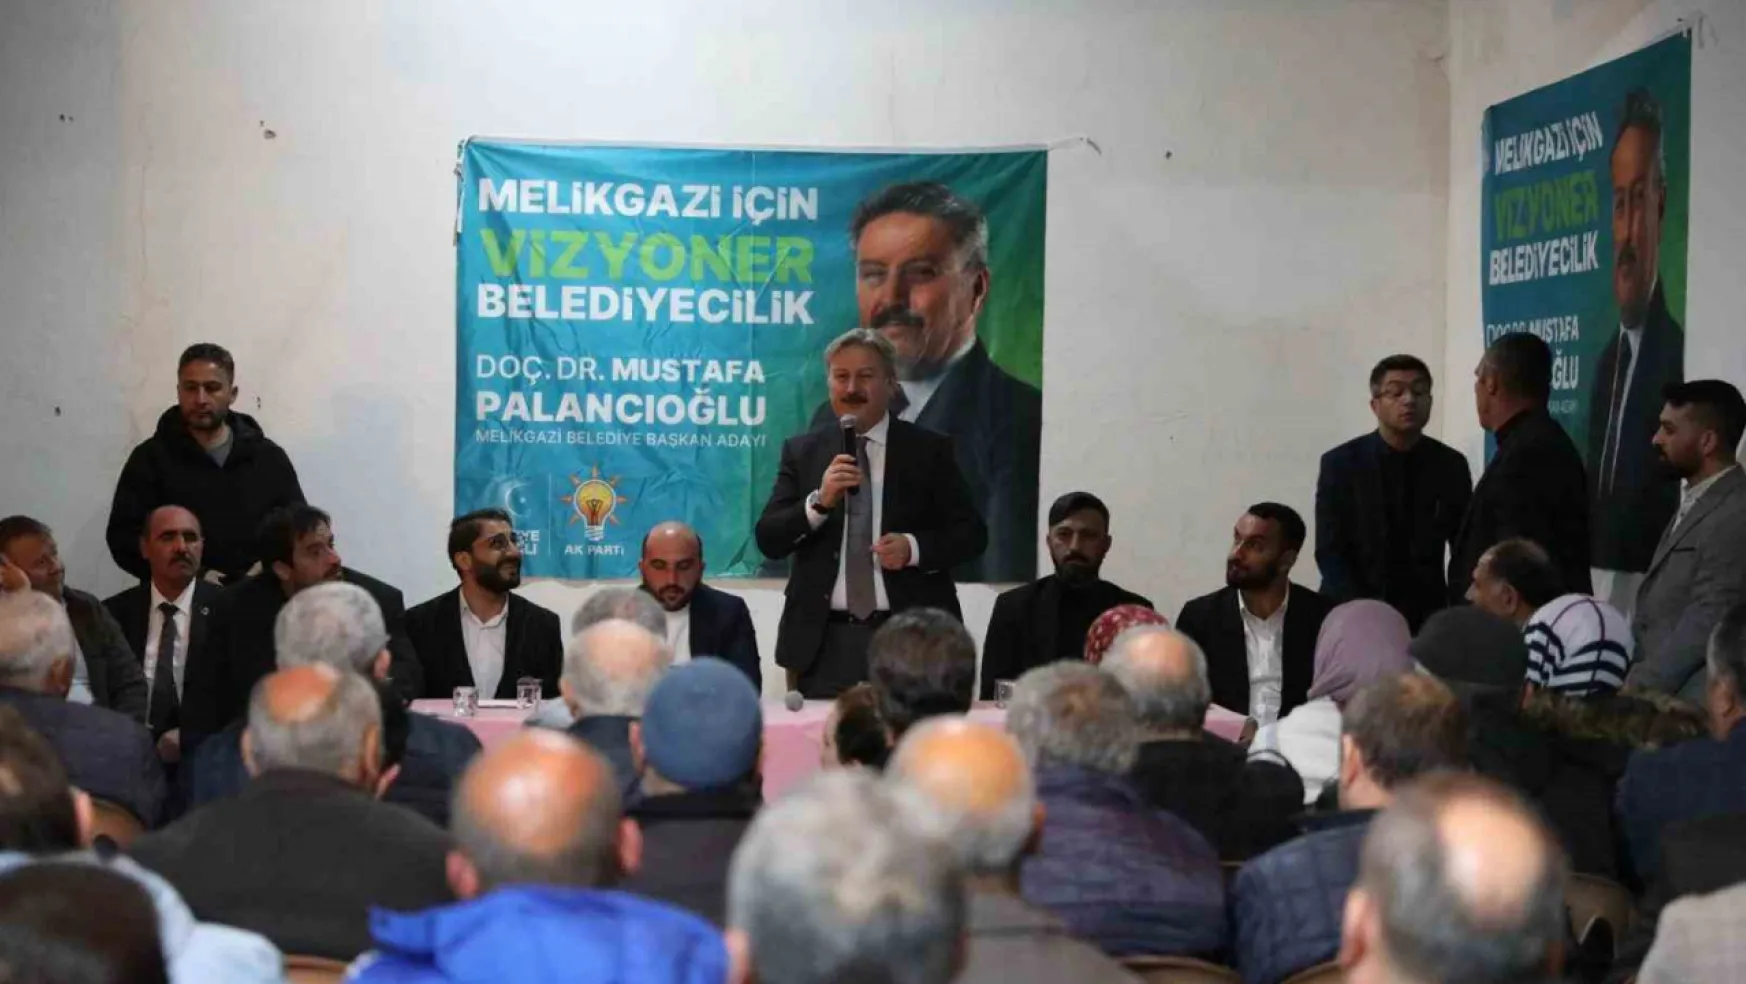 Başkan Palancıoğlu, 5 yılda yaptığı hizmetleri Battalgazi Mahalle halkı ile paylaştı